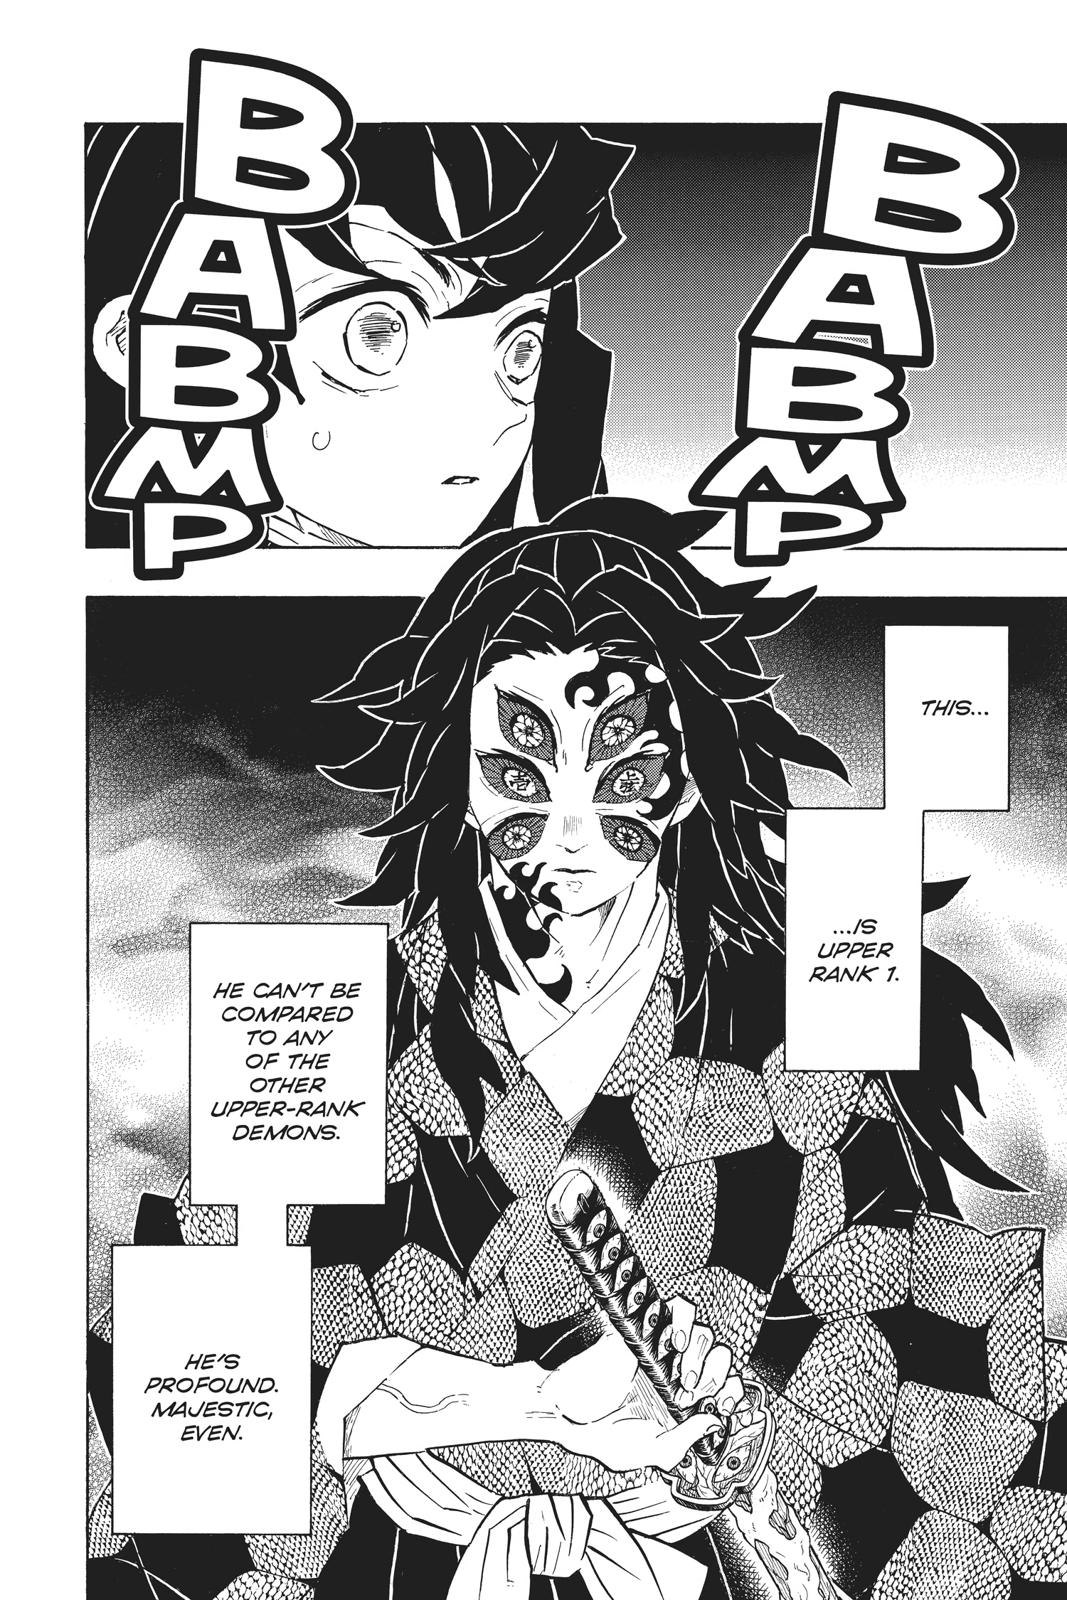 Demon Slayer Manga Manga Chapter - 165 - image 2